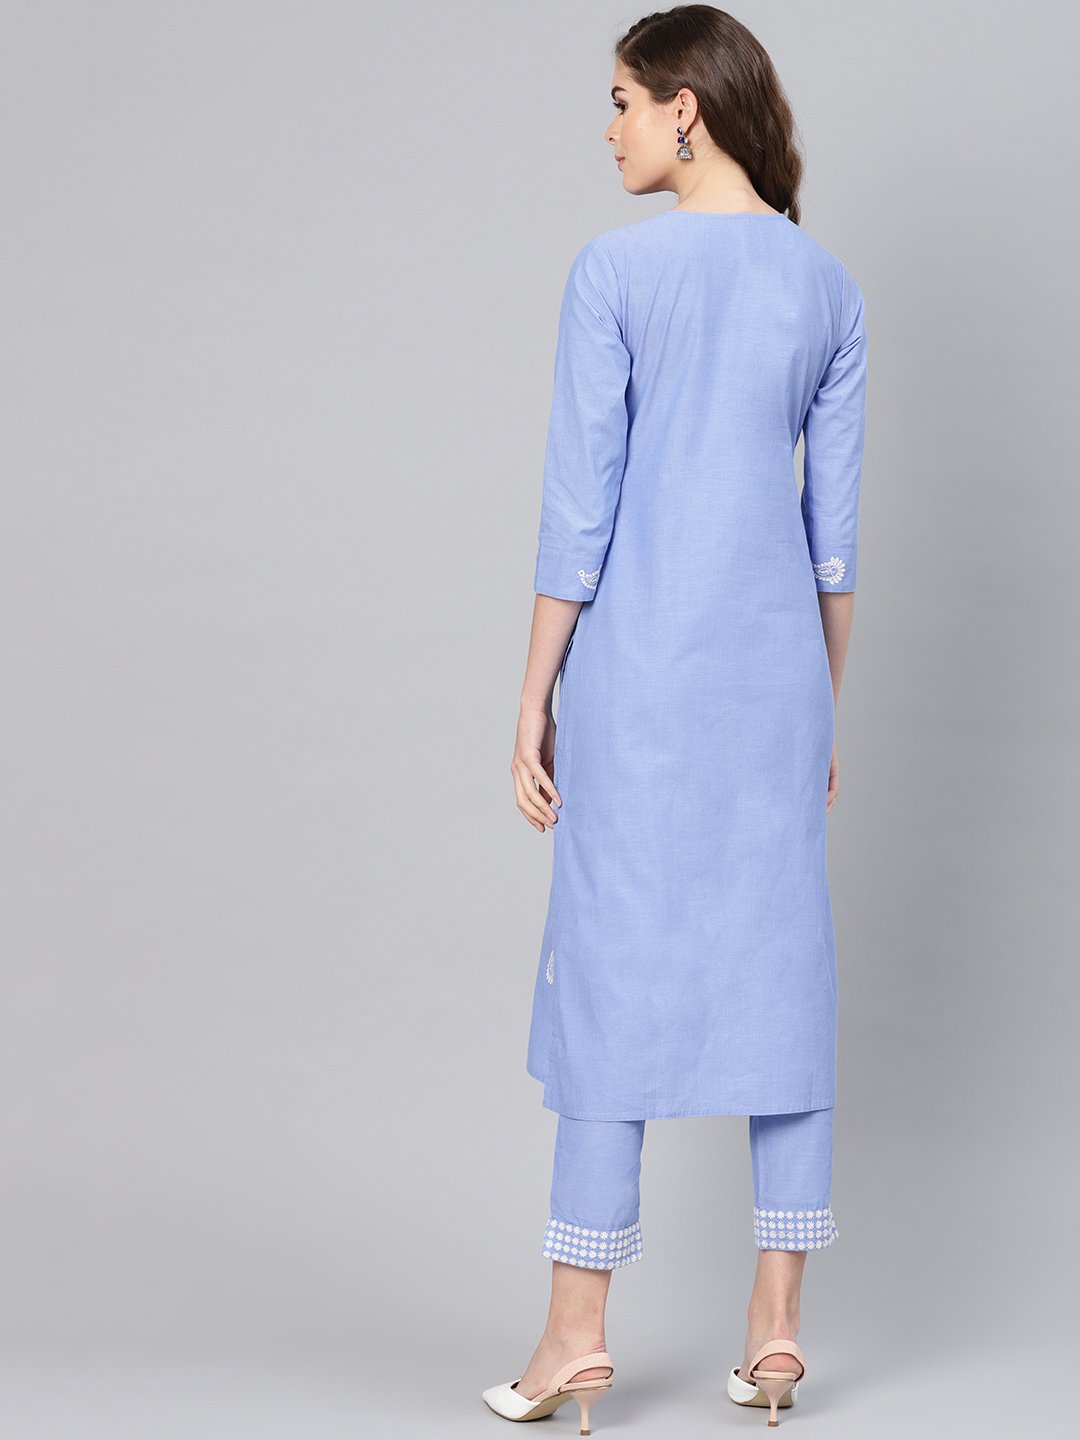 Ishin Women's Cotton Blue Embroidered A-Line Kurta Palazzo Set